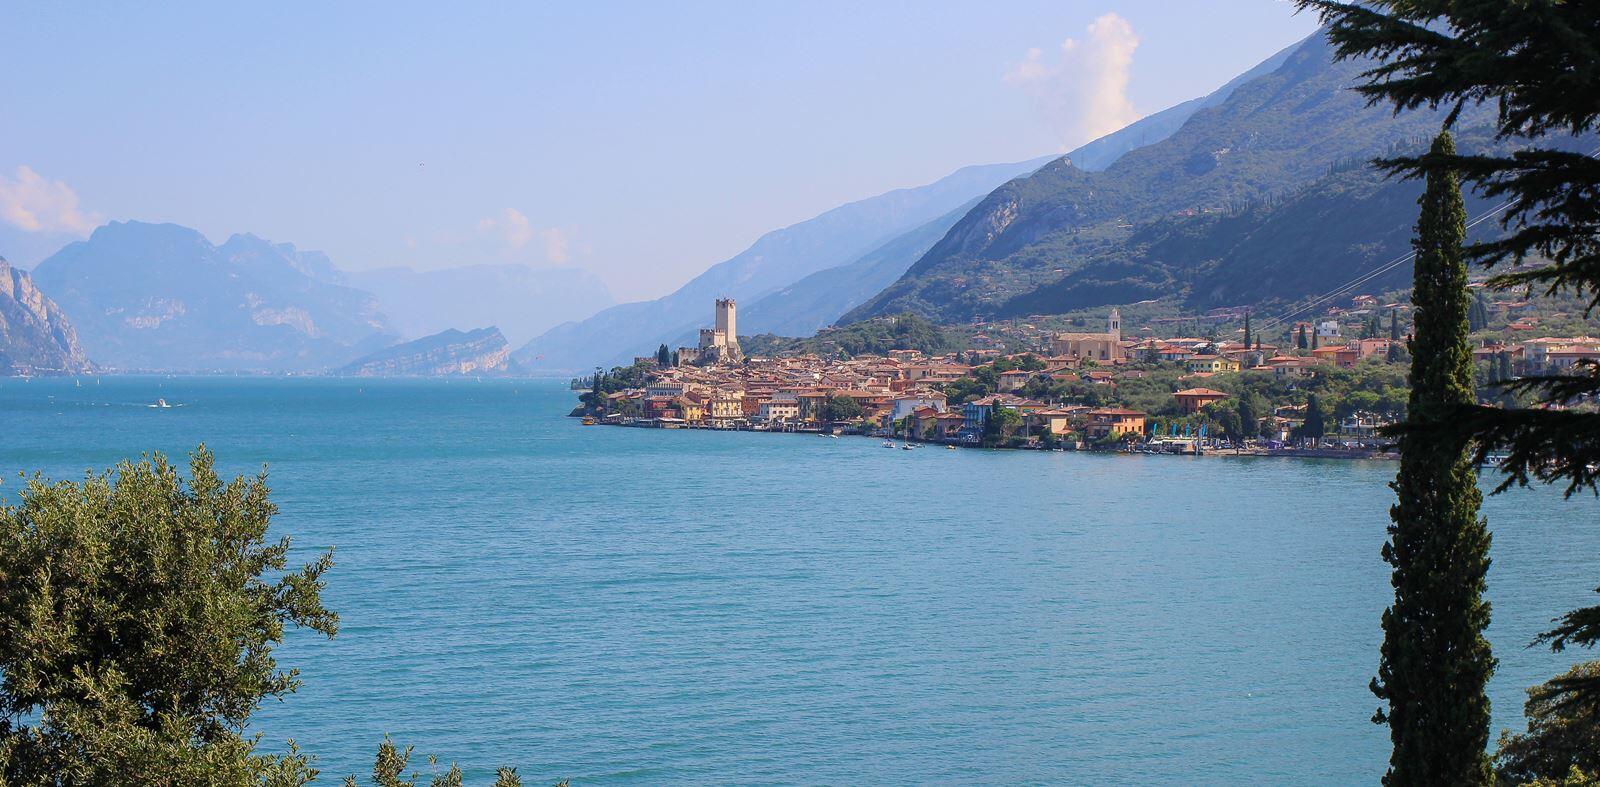 Glutenfrei Urlaub an den Oberitalienischen Seen